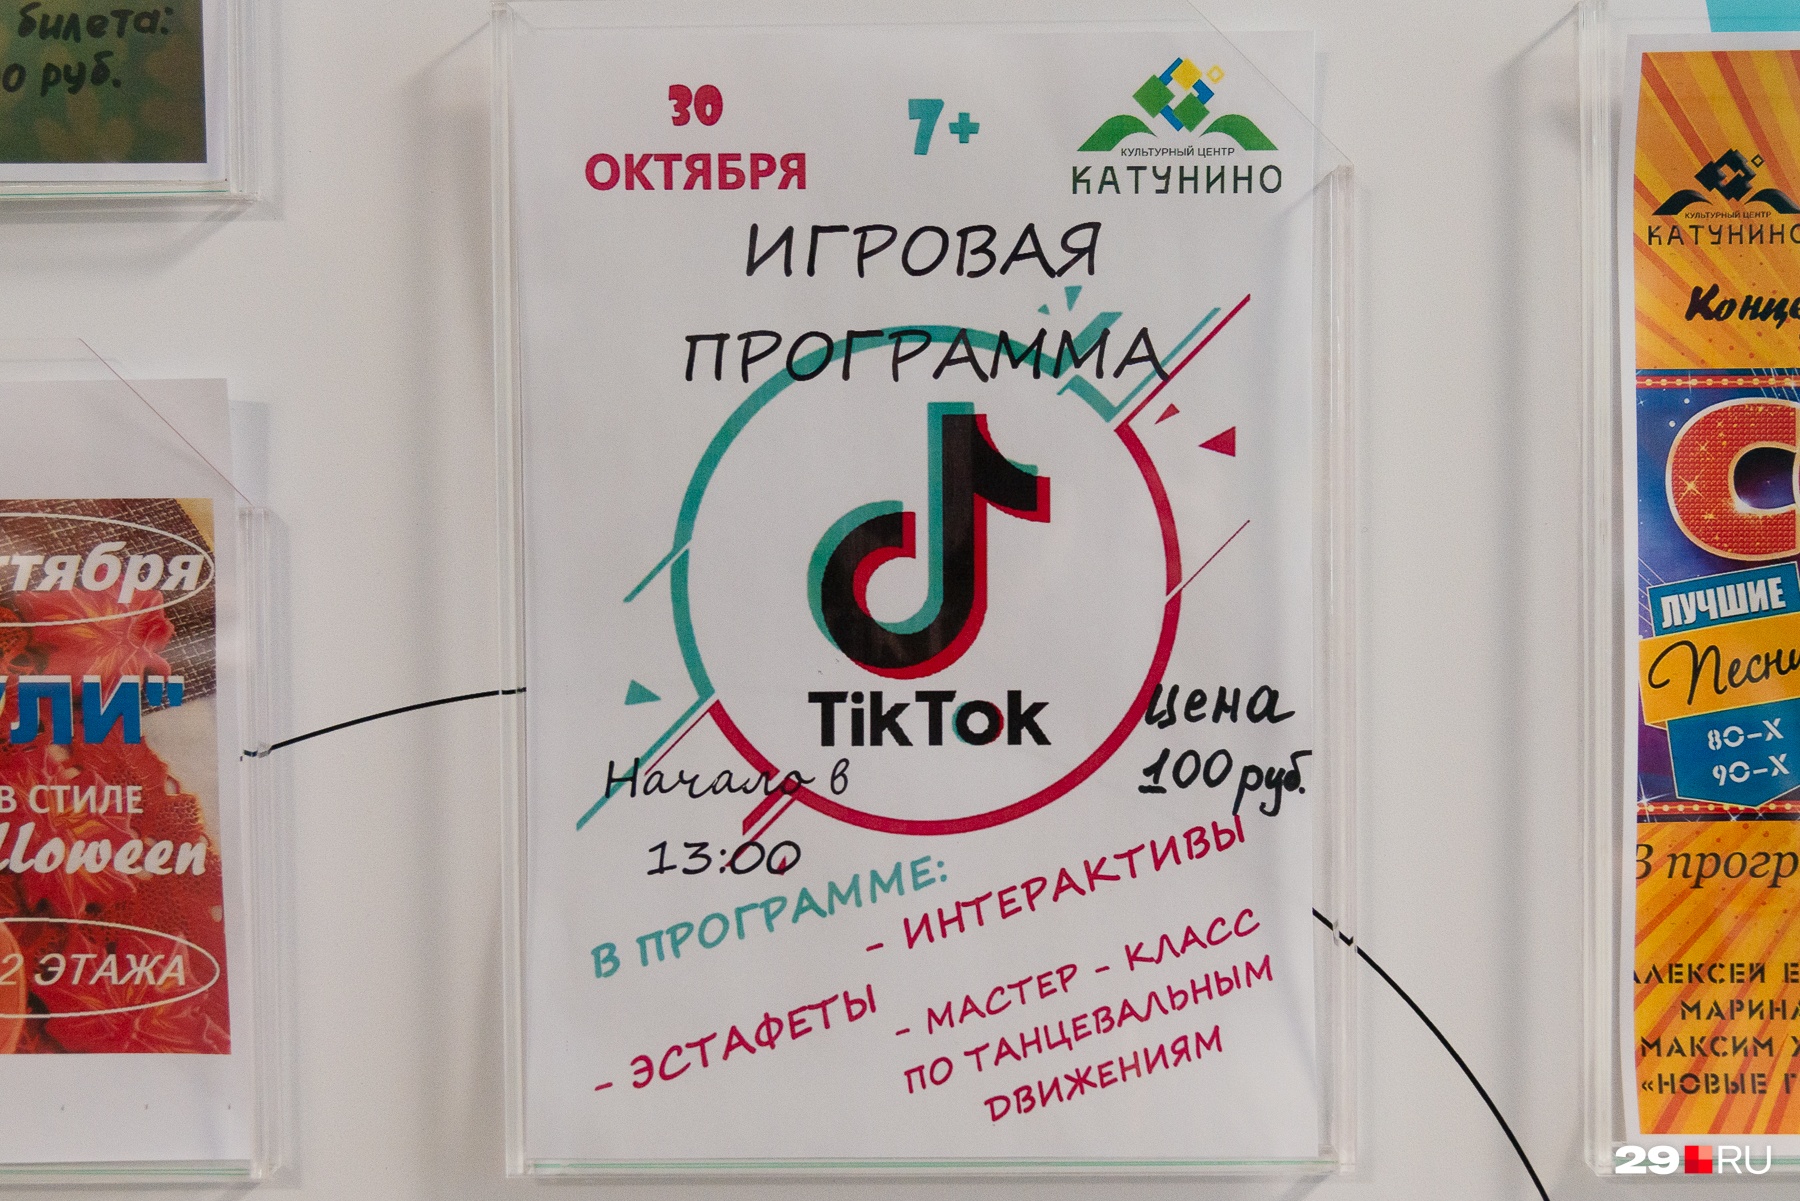 «ТикТок» — популярный у молодежи сервис для создания и просмотра коротких видео